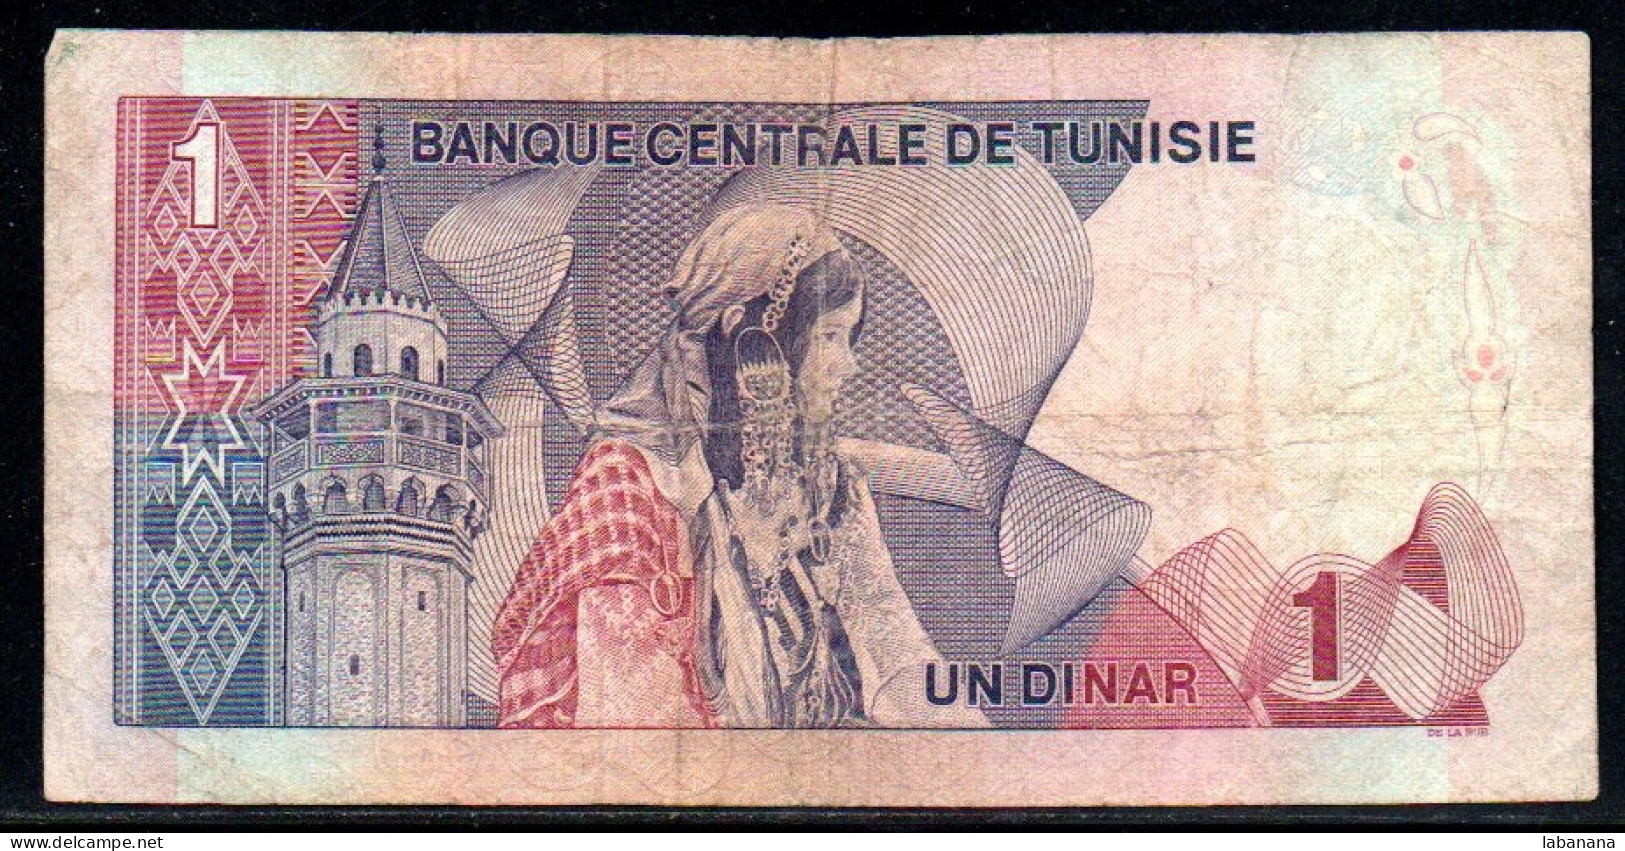 624-Tunisie 1 Dinar 1972 B18 - Tunisie